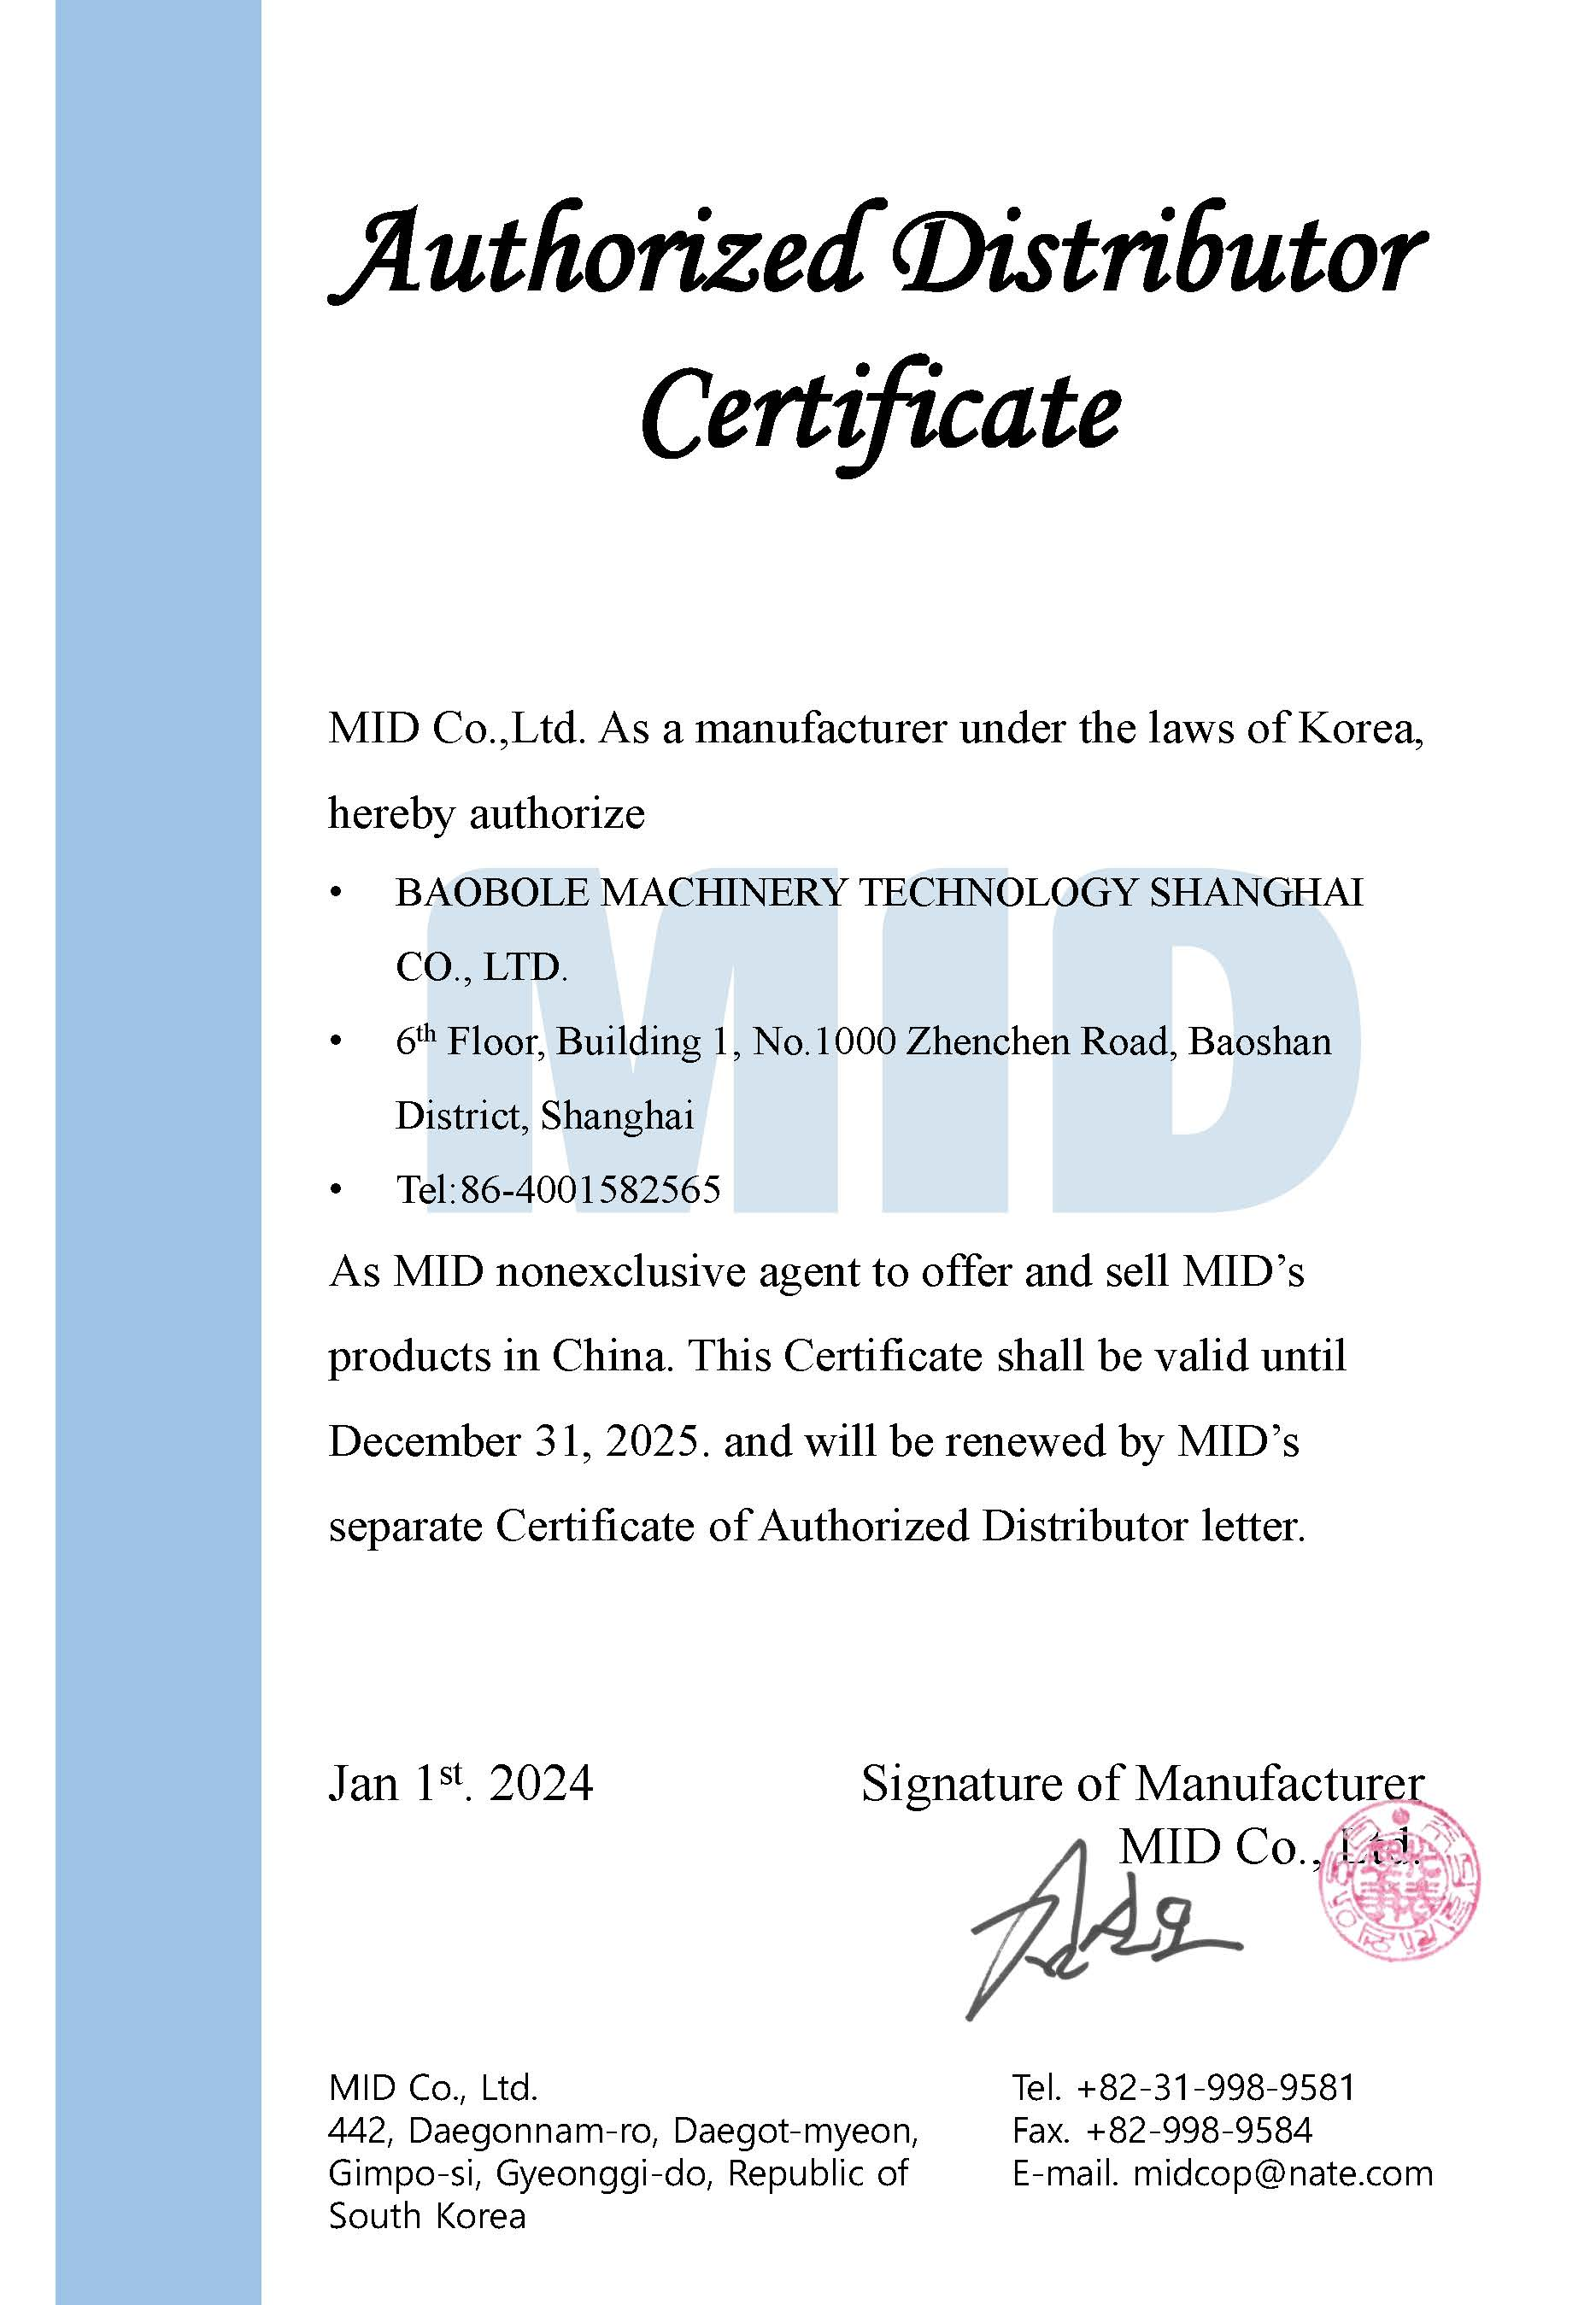 保铂乐机械科技（上海）有限公司—MID品牌授权经销商